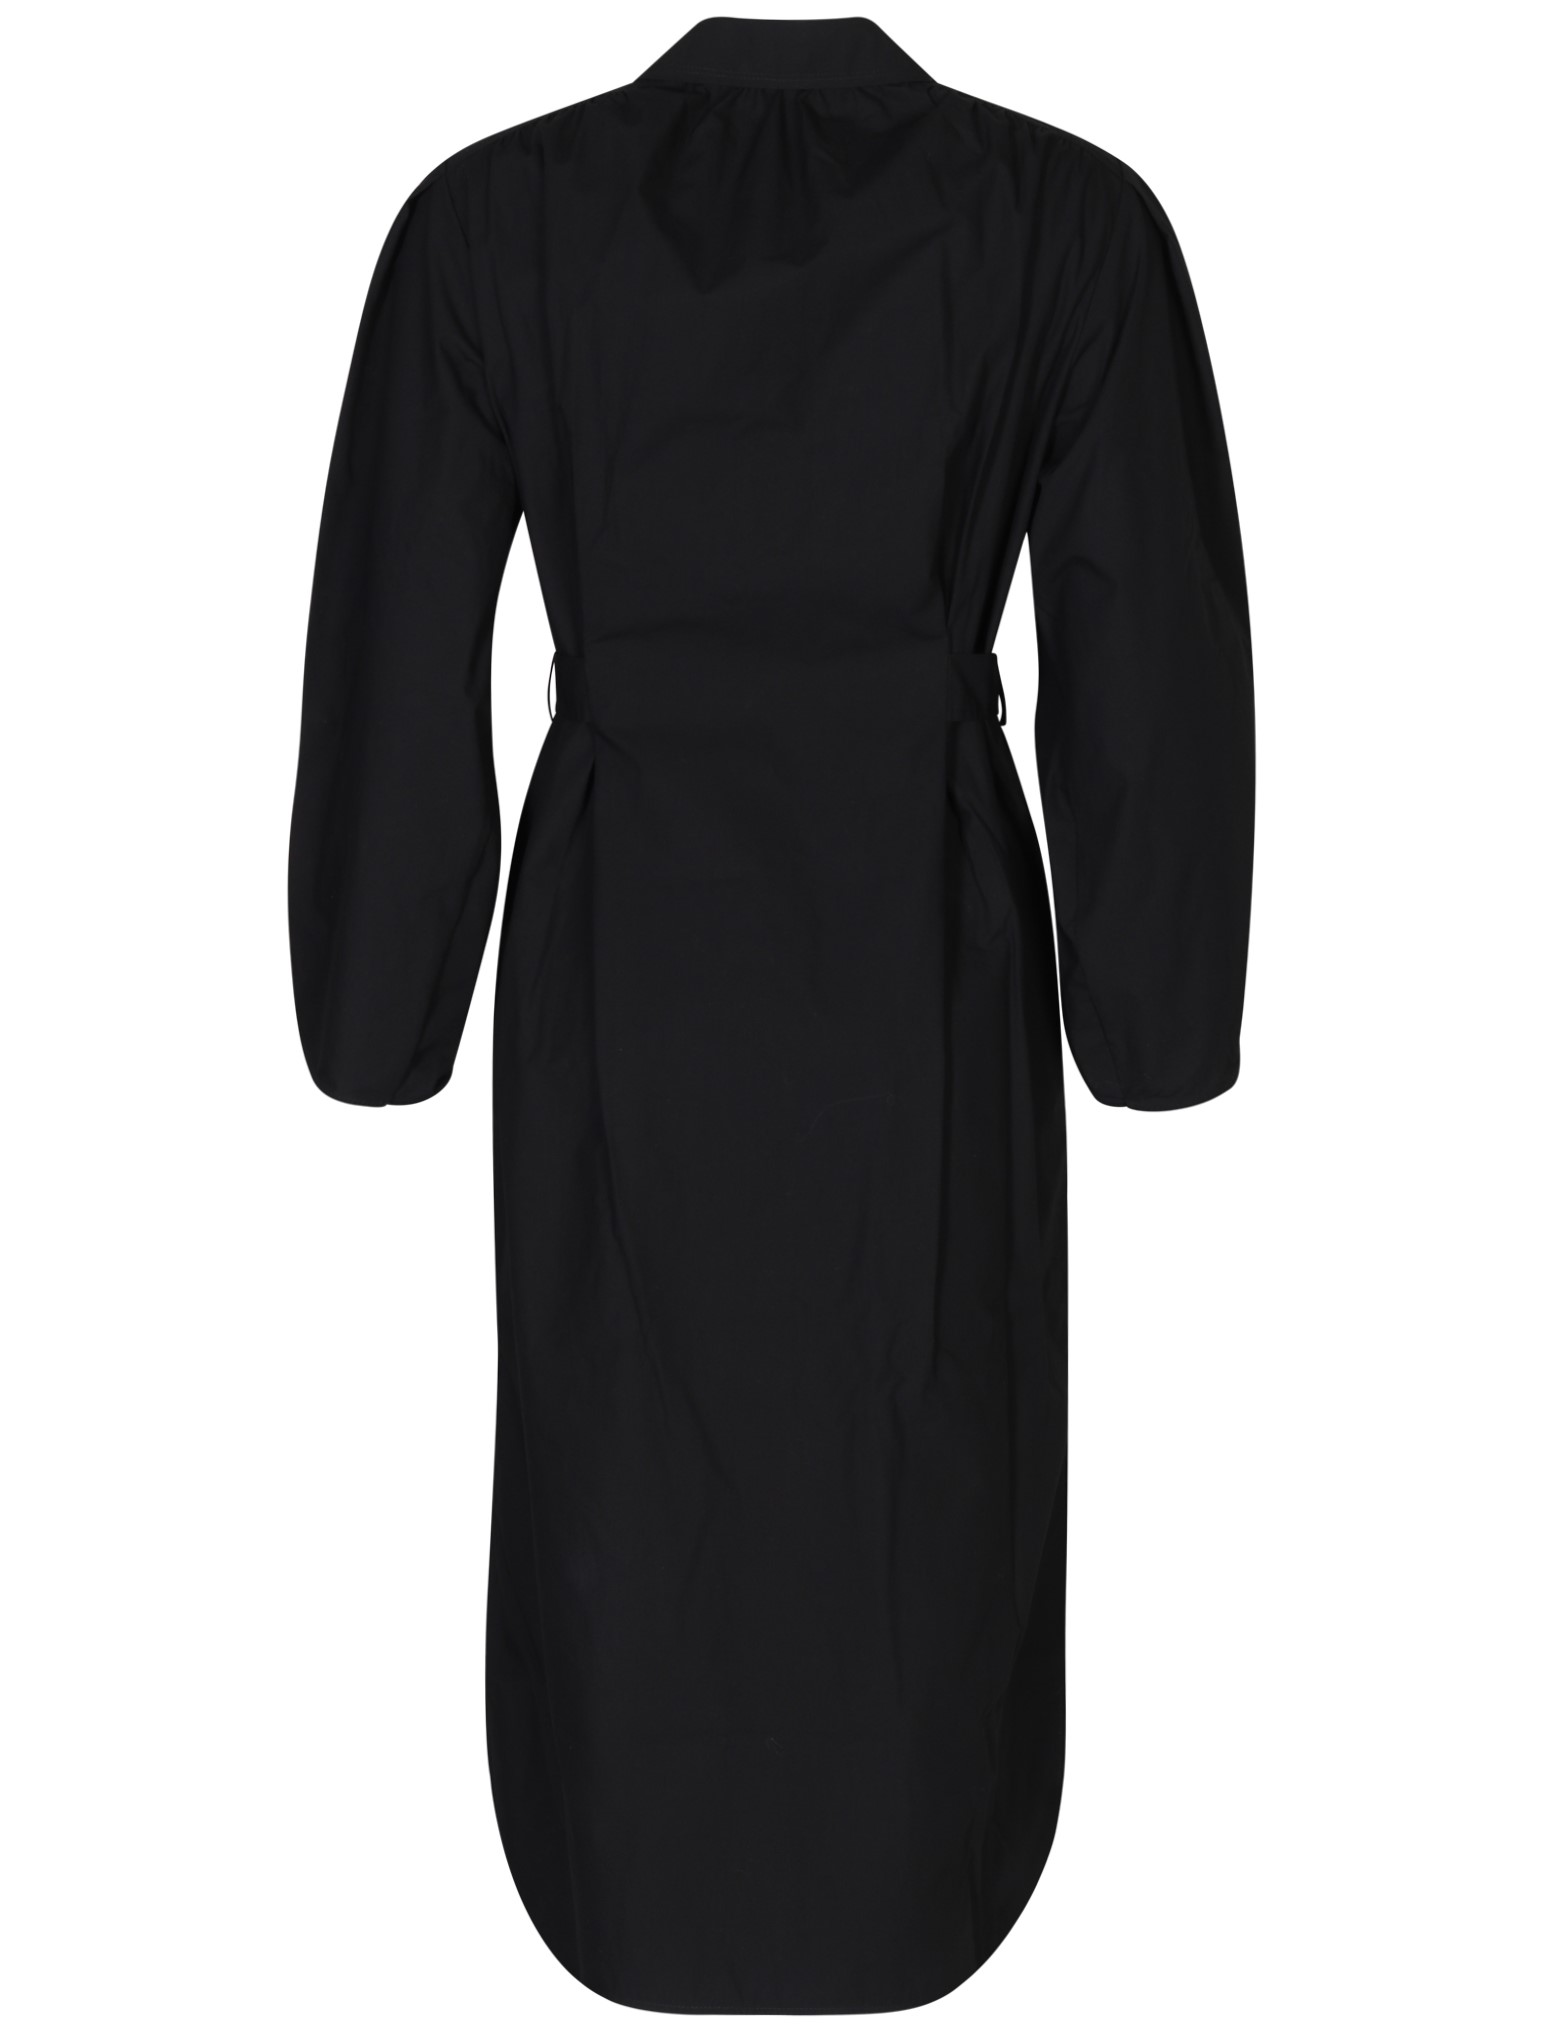 SOCIÉTÉ ANGELIQUE Ana Cotton Dress in Black 34